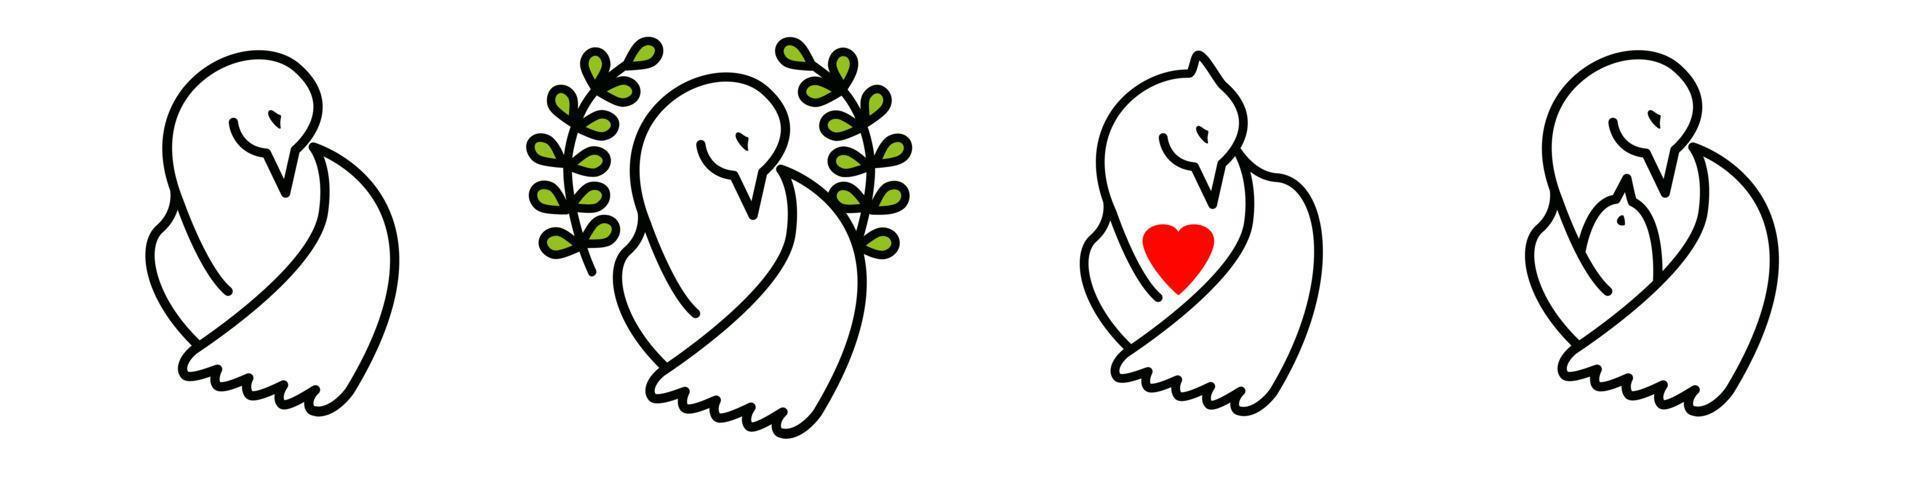 vektor uppsättning av duva av de värld, duva med en röd hjärta, en fågel med en brud. grupp av annorlunda begrepp isolerat på vit bakgrund. symboler av fred, barmhärtighet, ömsesidig bistånd, kärlek, moderskap